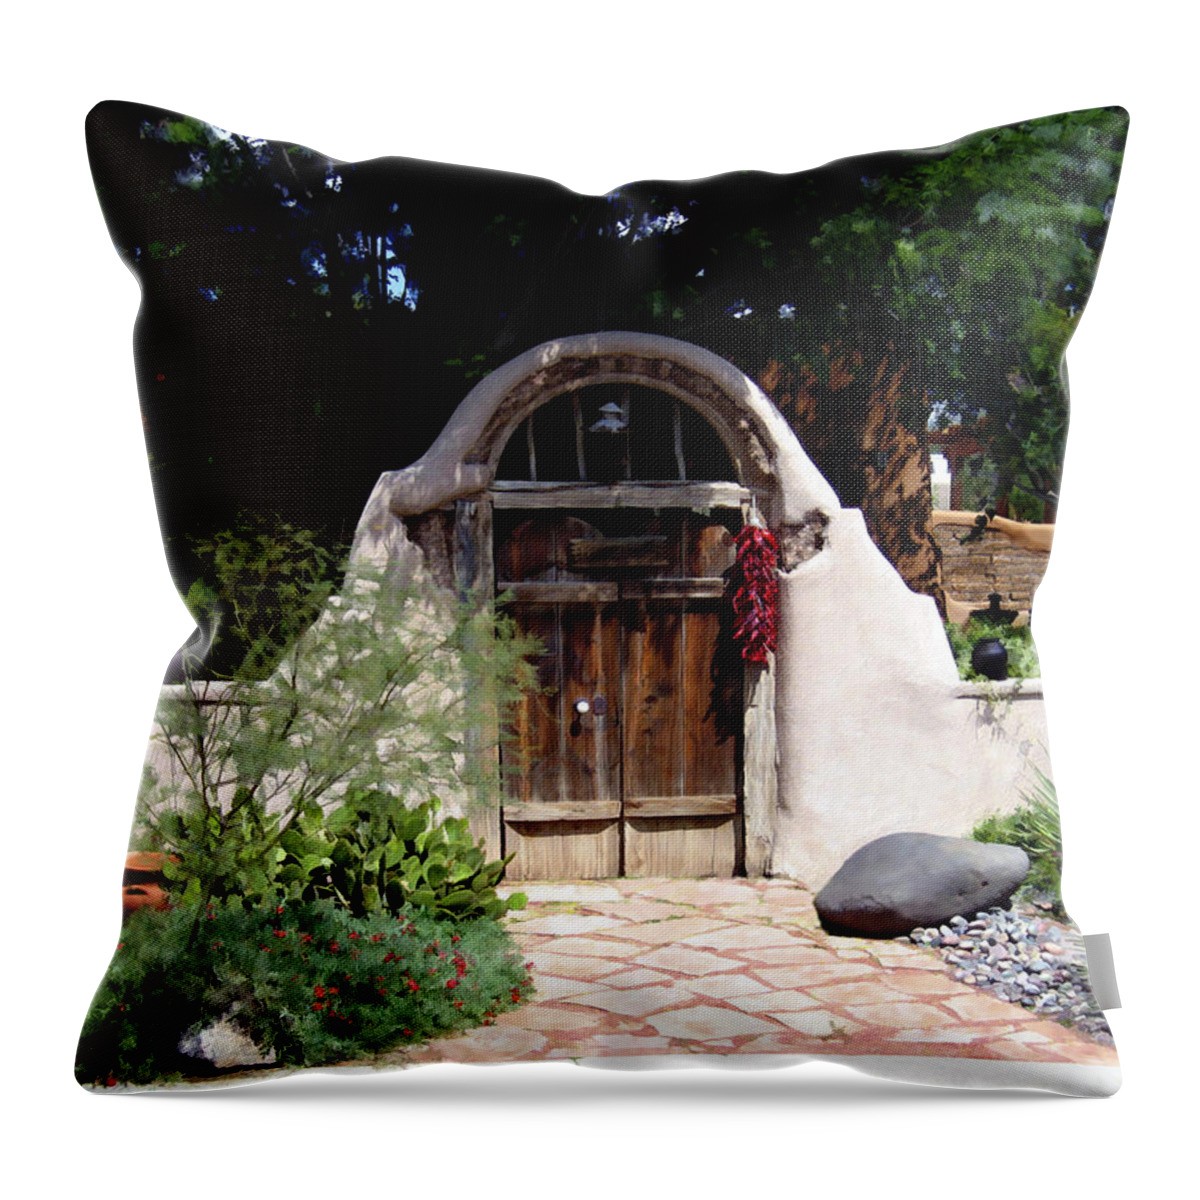 Doors Throw Pillow featuring the photograph La Entrada a la casa vieja de Mesilla by Kurt Van Wagner